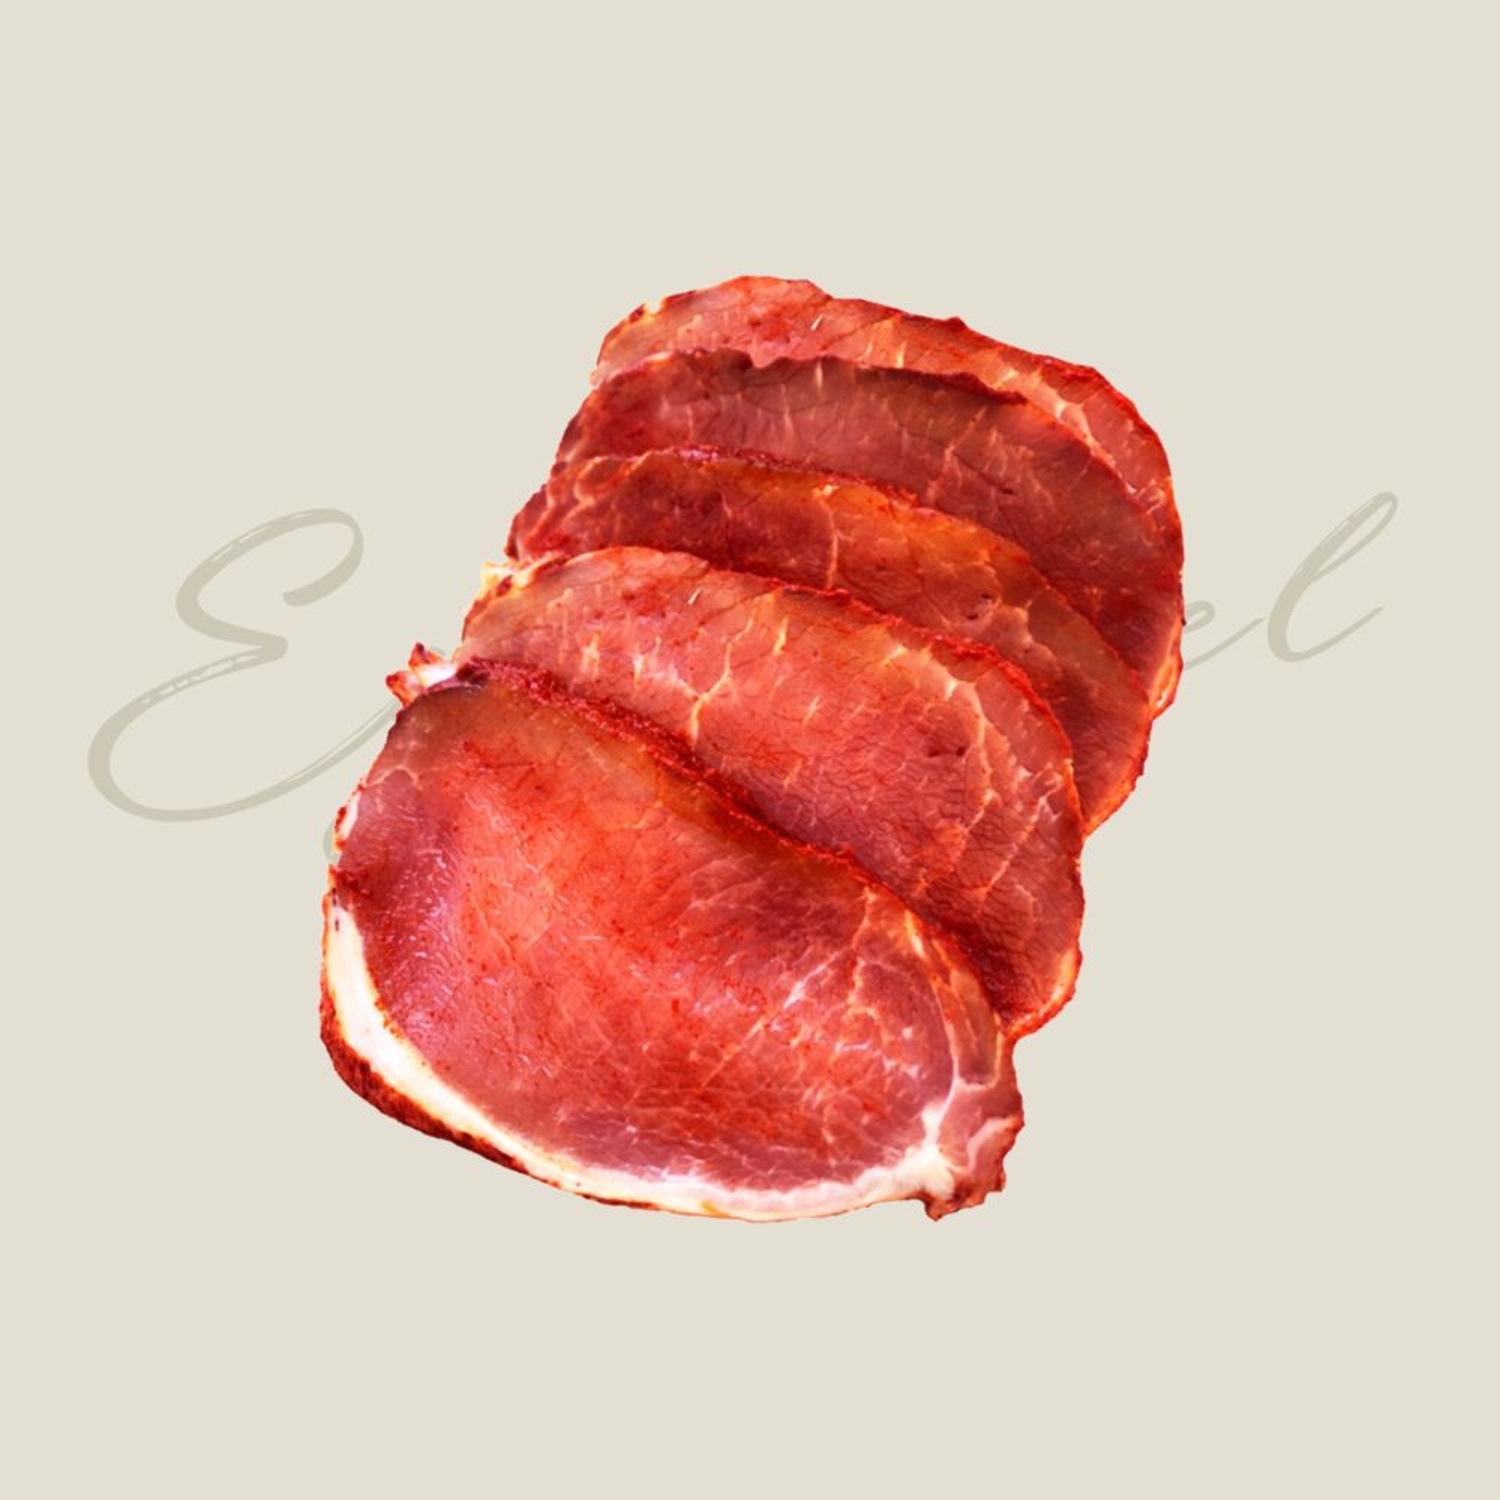 Lomo cinta de cerdo (filetes)